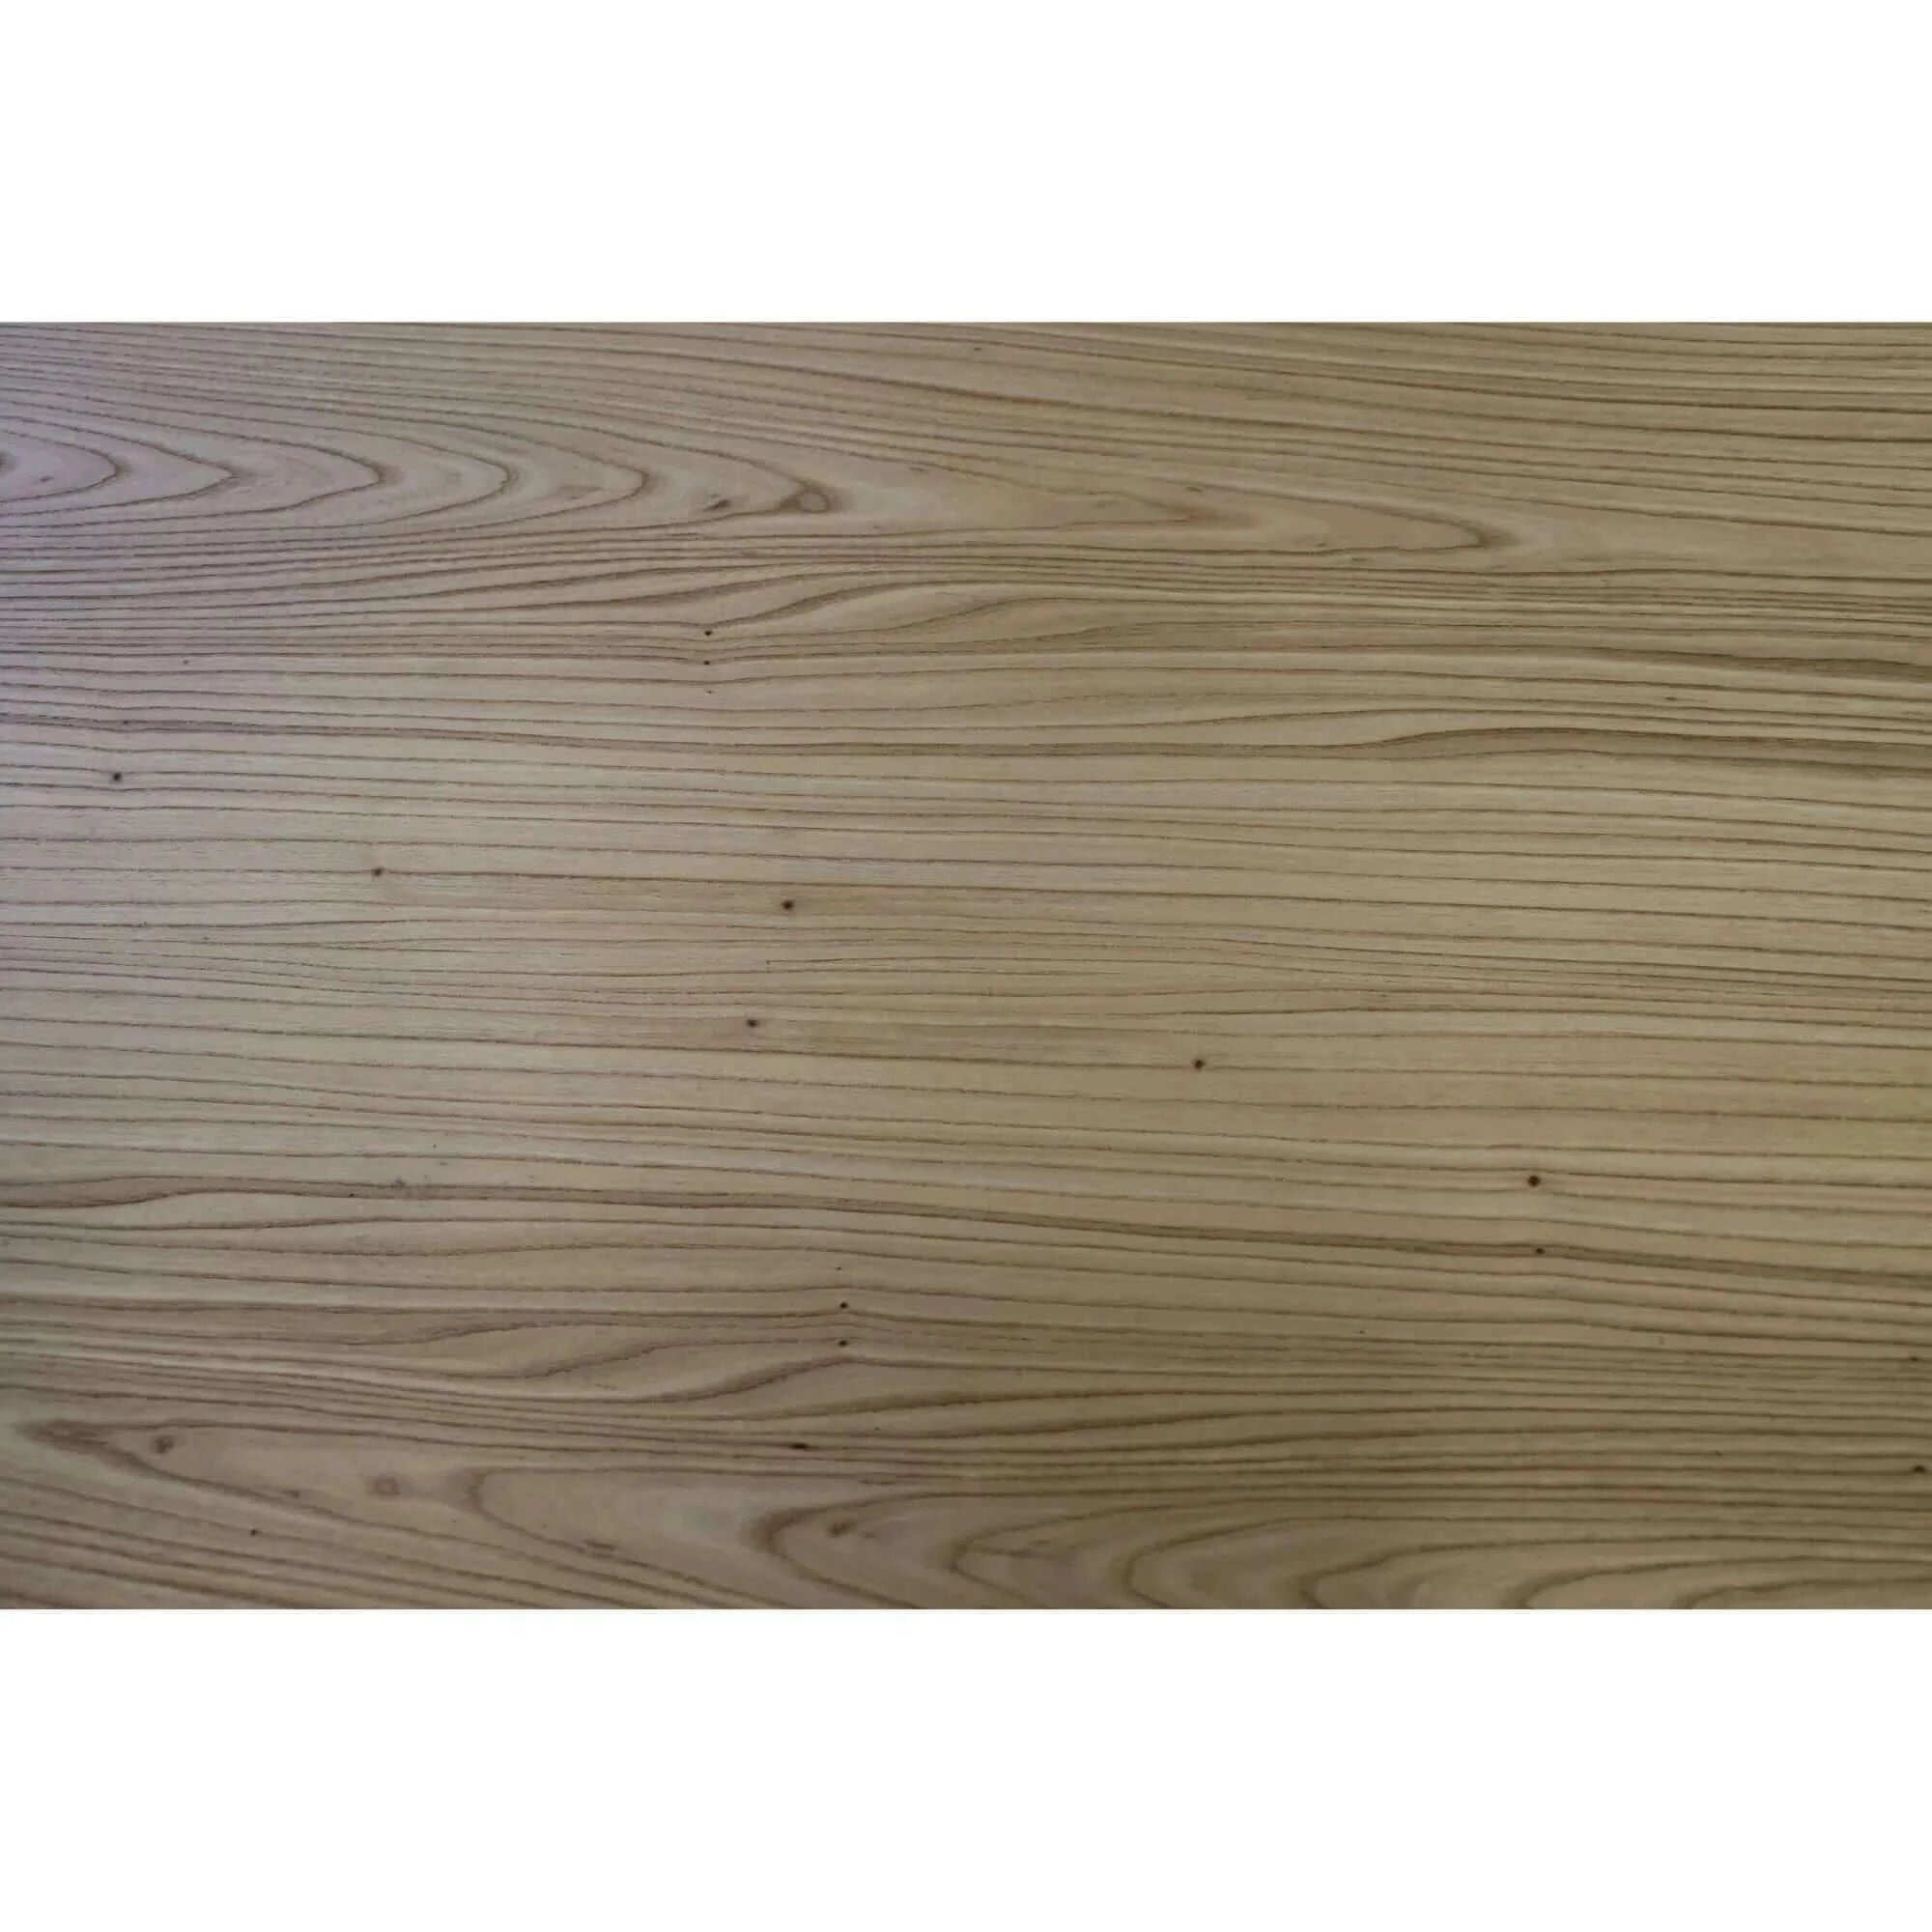 Buy petunia dining table 180cm elm timber wood black metal leg - natural - upinteriors-Upinteriors